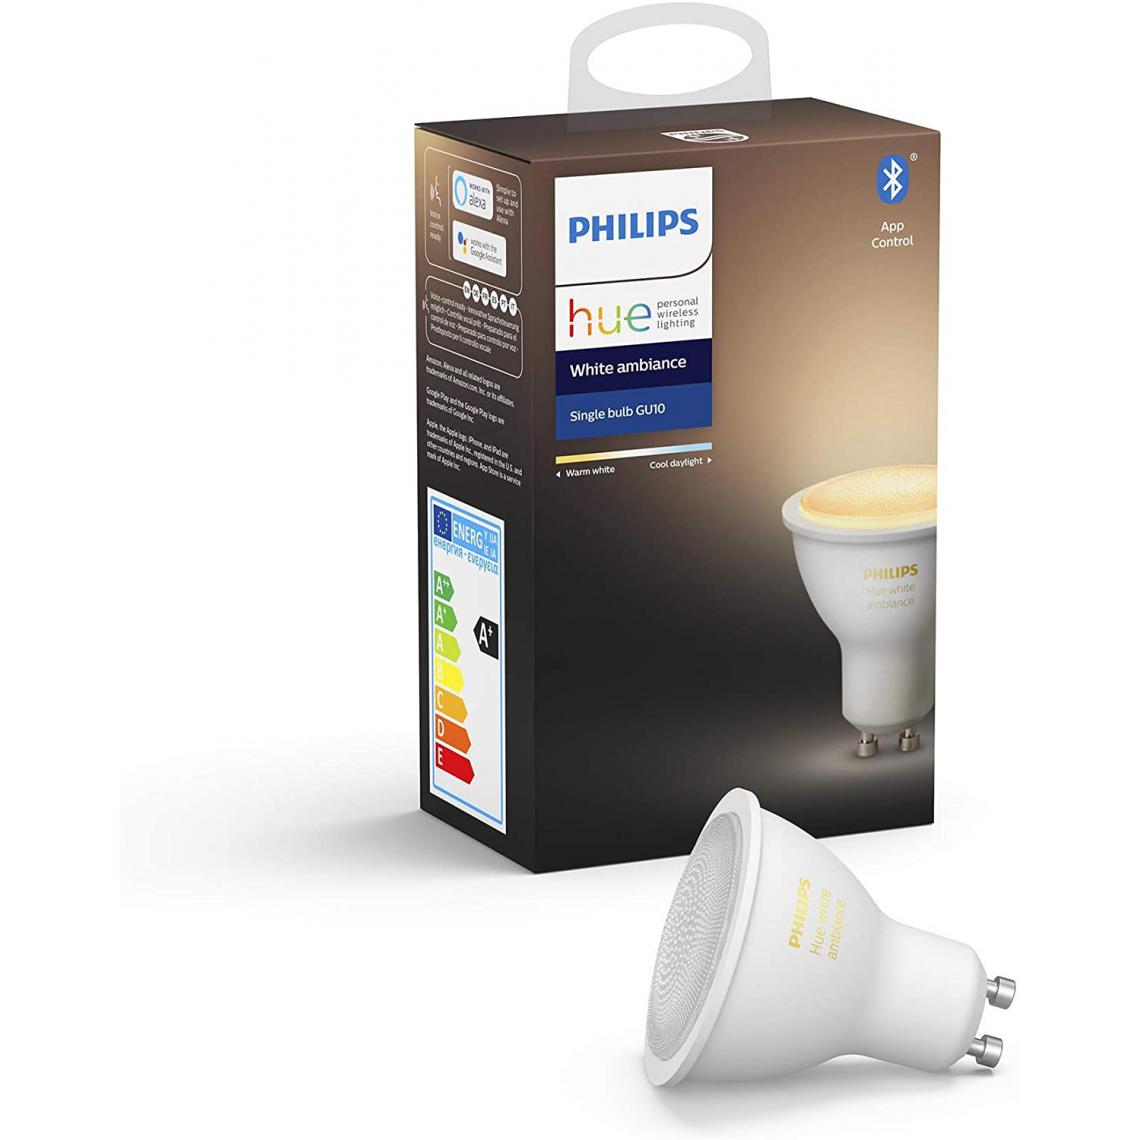 Philips - ampoule LED Connectée White Ambiance GU10 Compatible Bluetooth avec fonctionne avec Alexa [Classe énergétique A+] - Lampe connectée